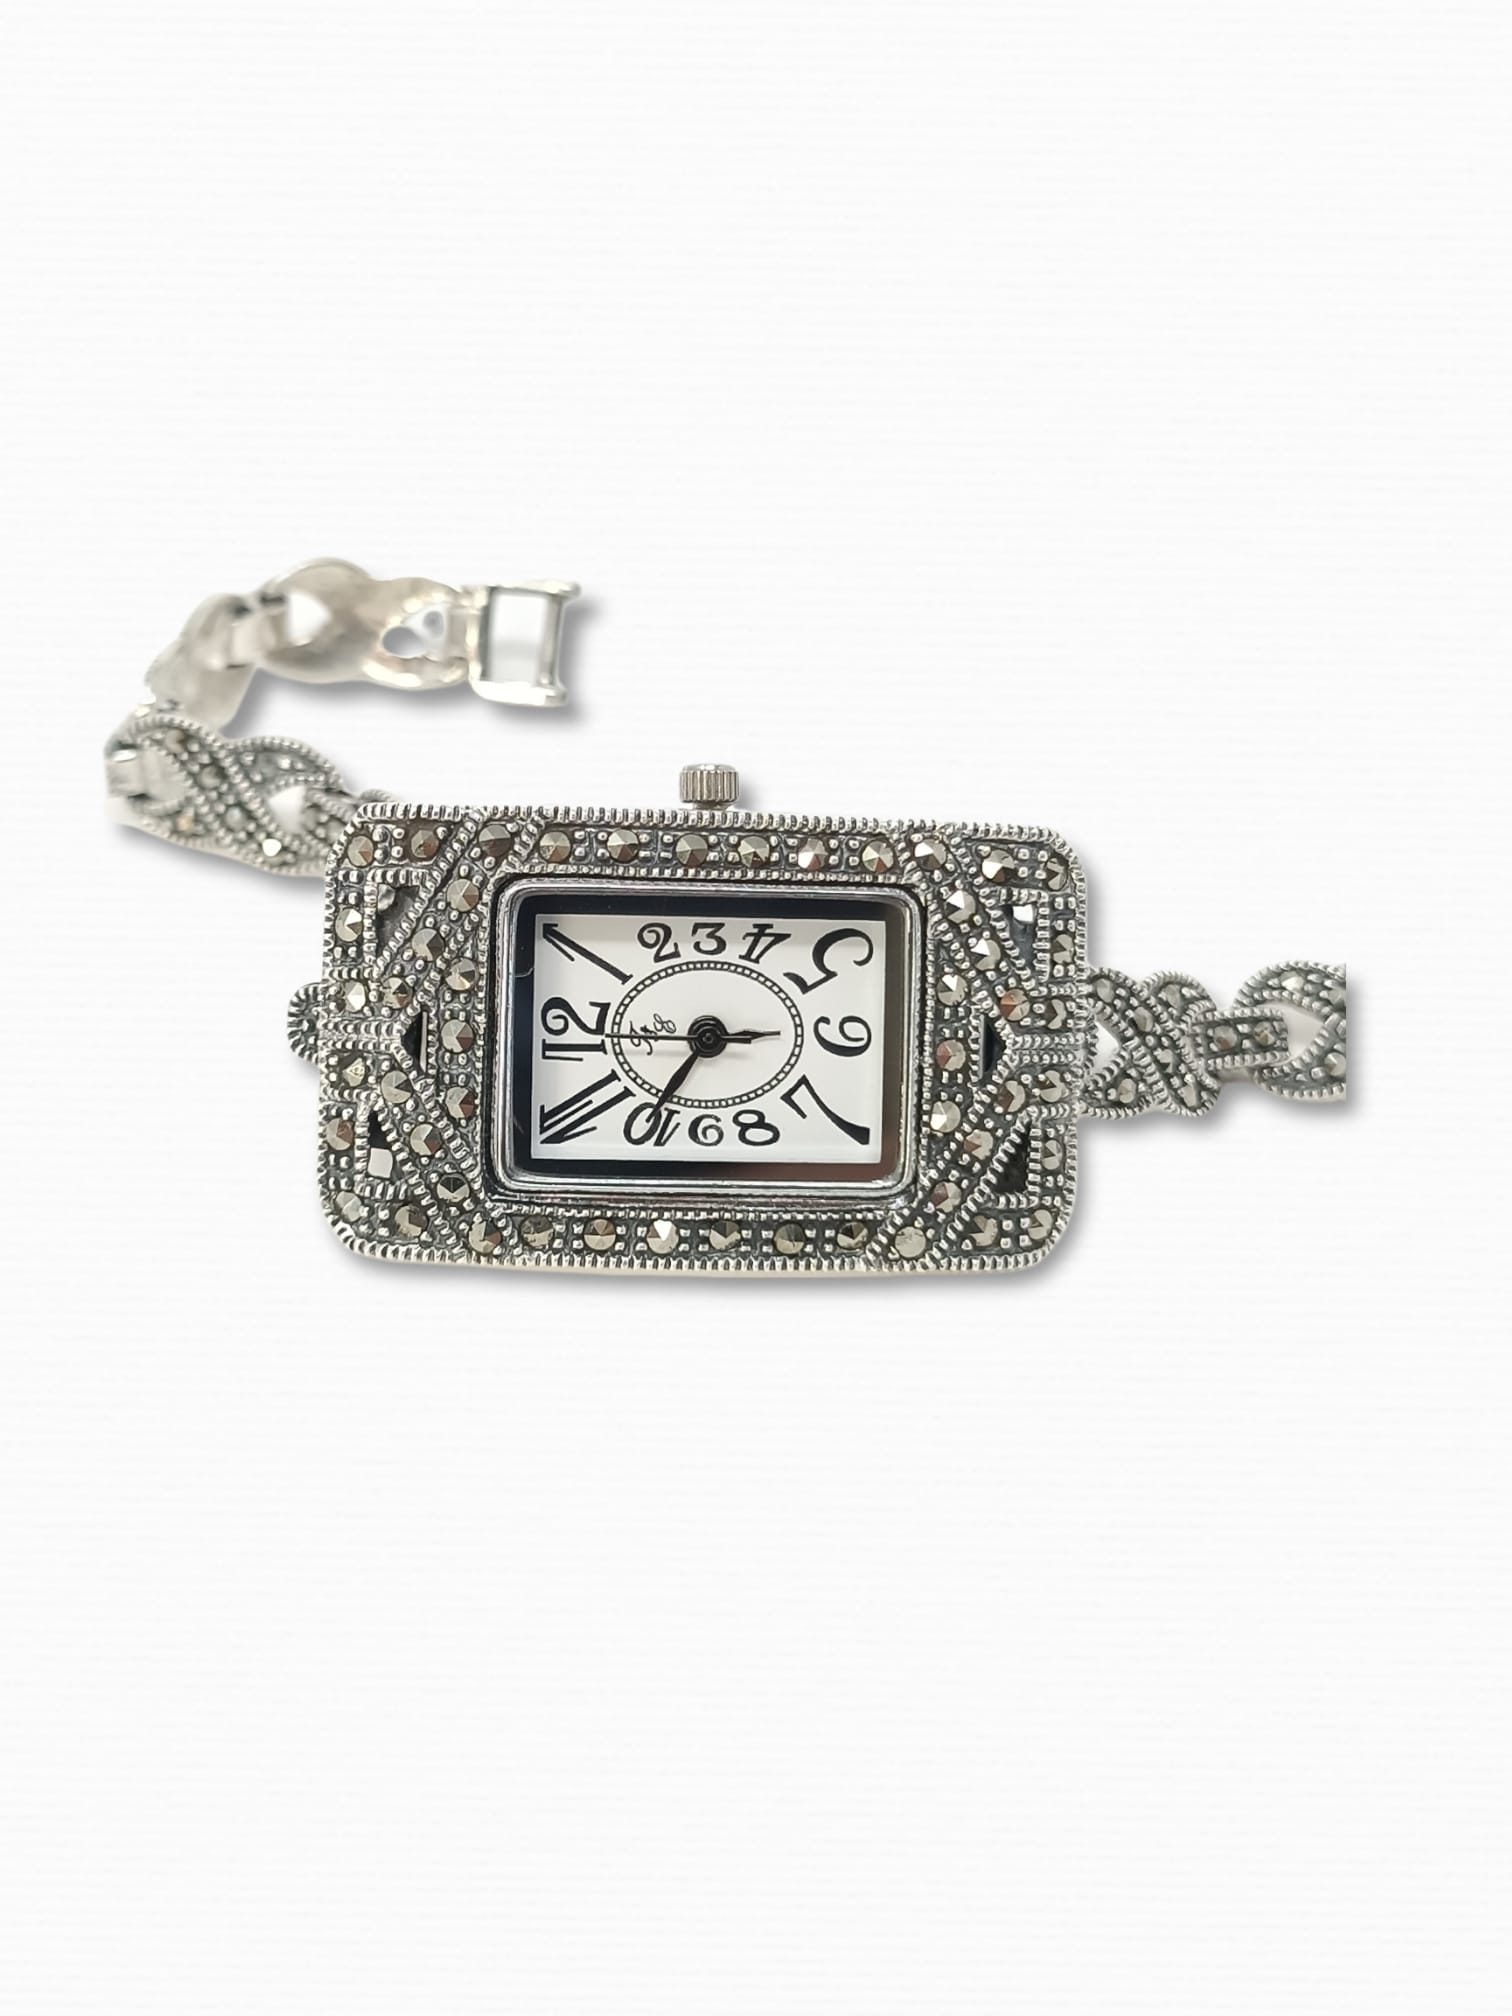 reloj-pulsera-mujer-estilo-antiguo